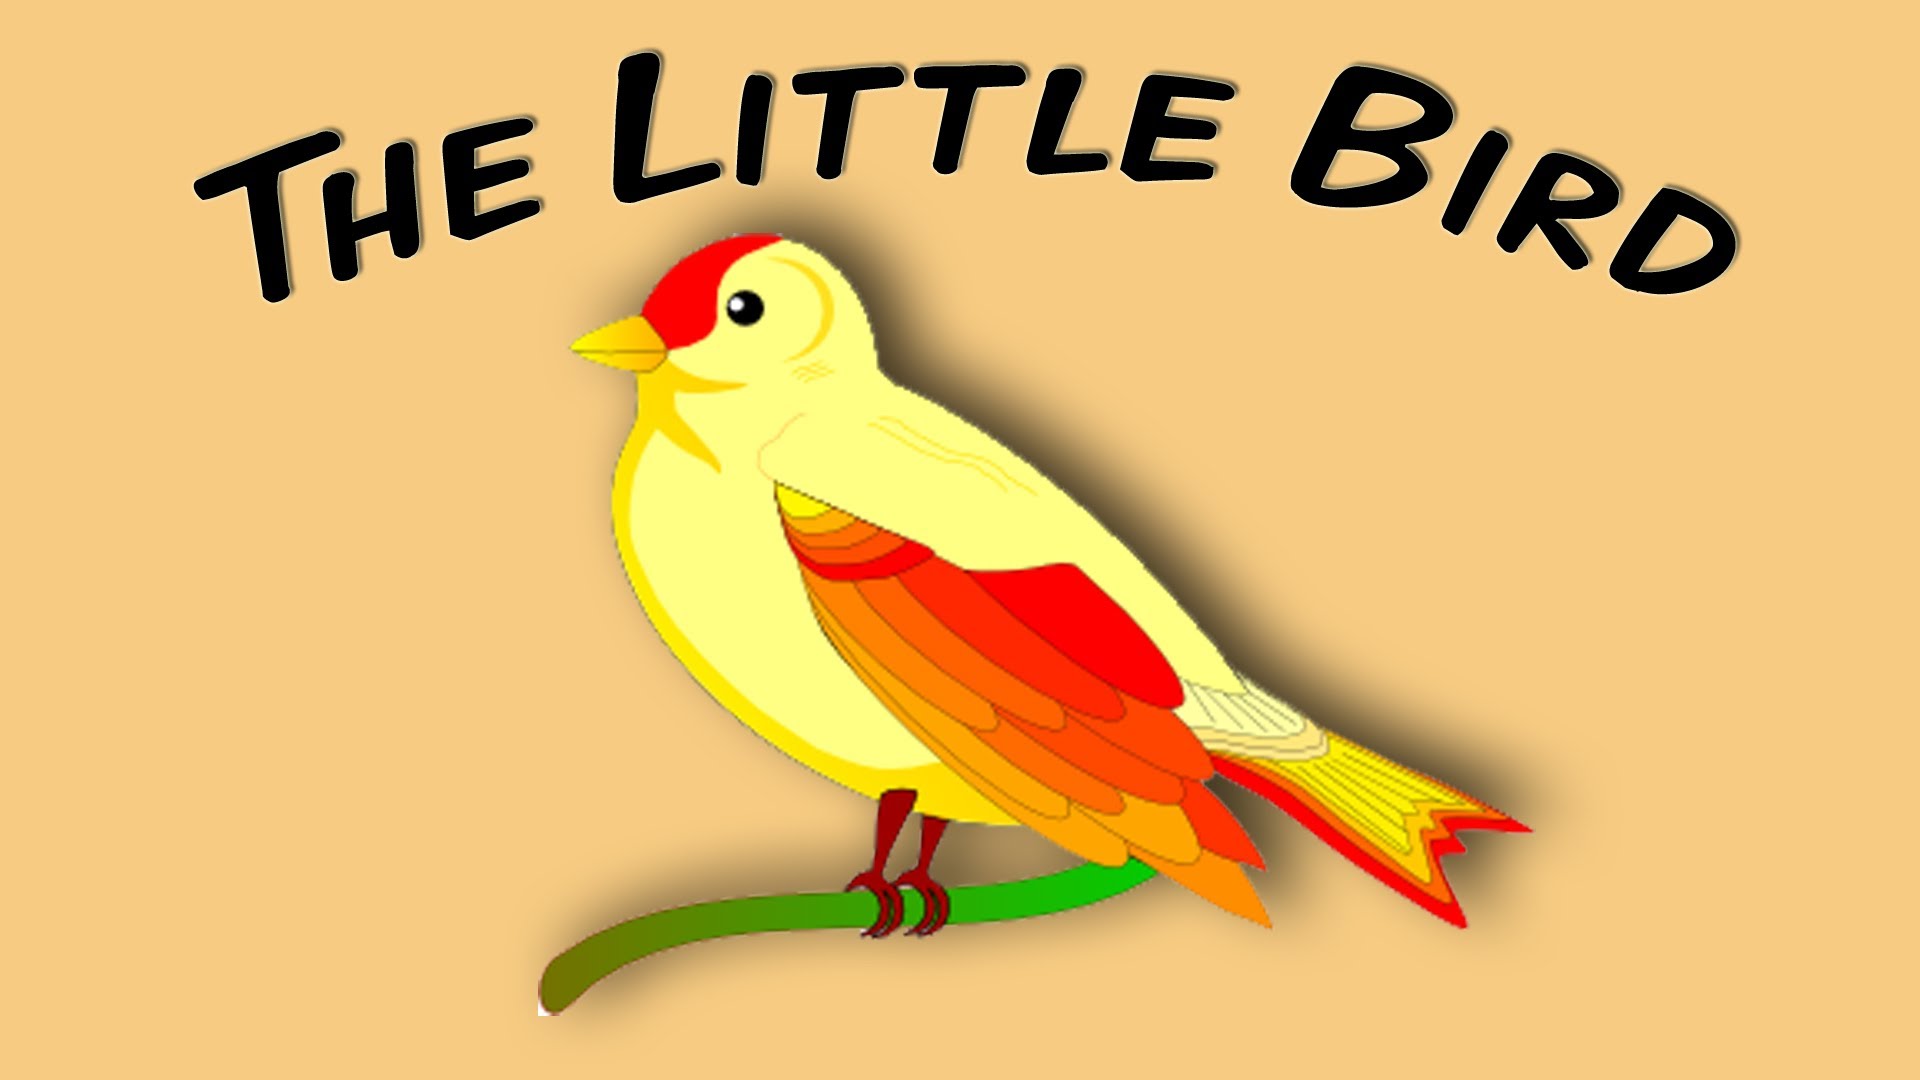 The Little Bird (fingerplay song for children) - YouTube